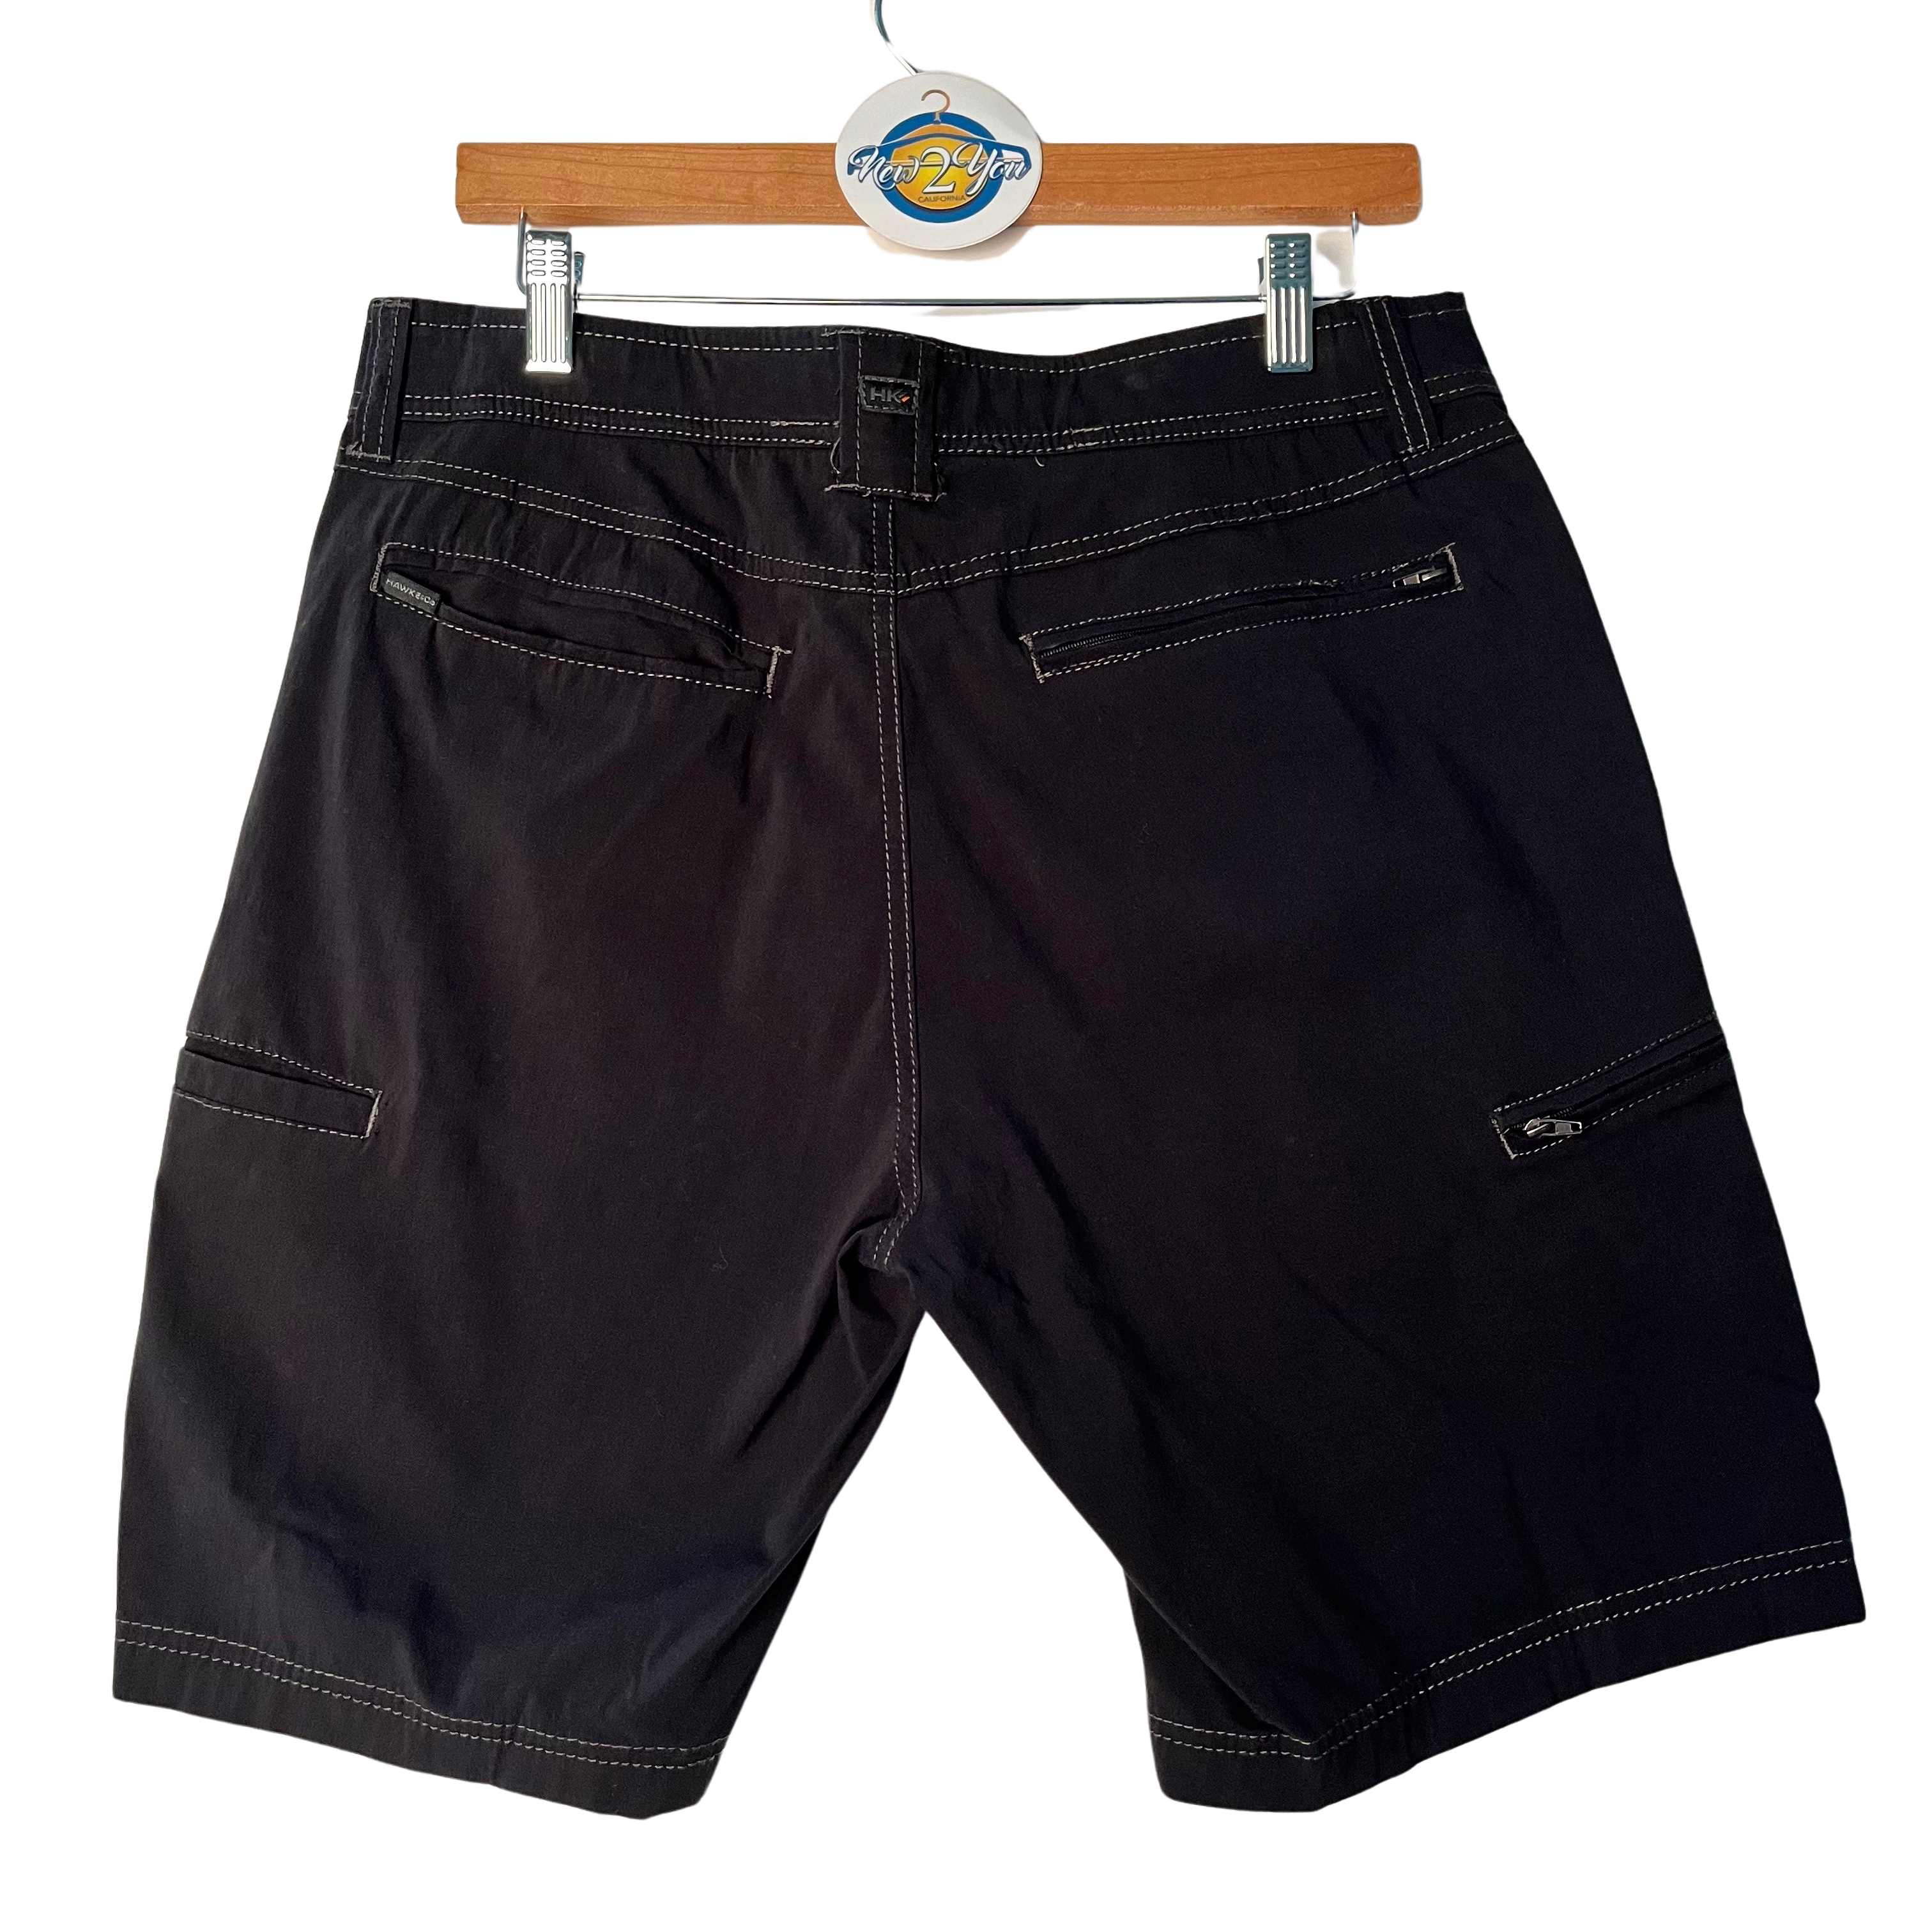 Hawke&Co. Black Cargo Shorts